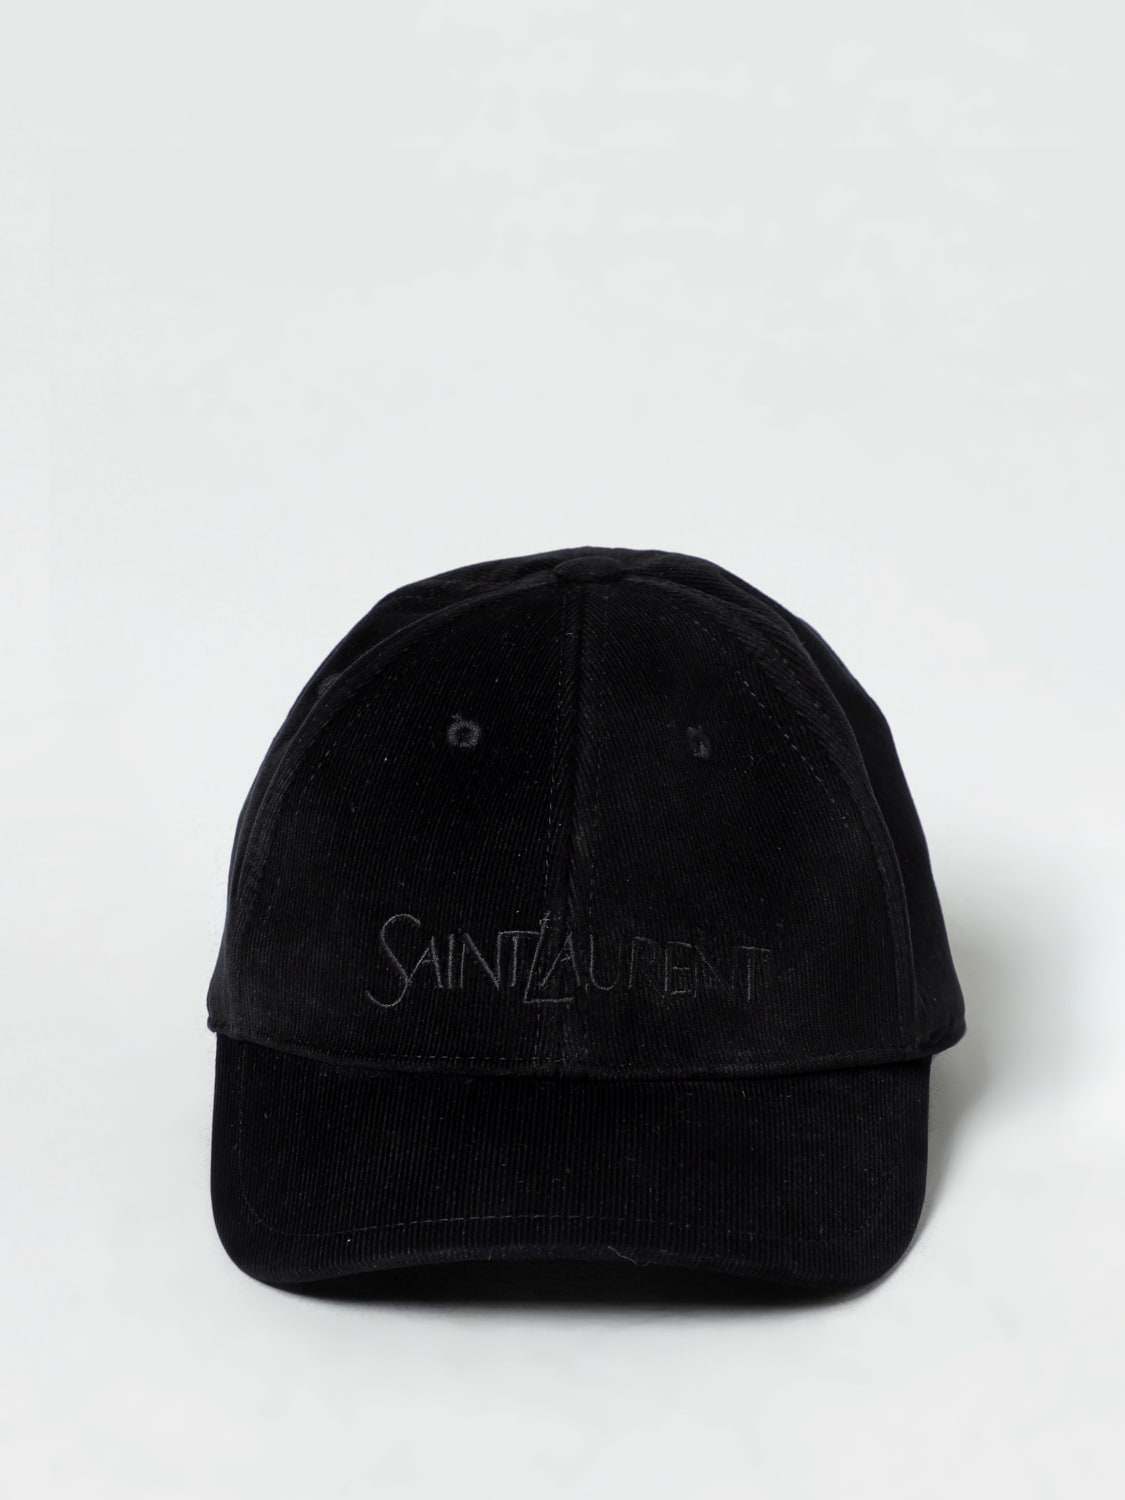 saint laurent hat